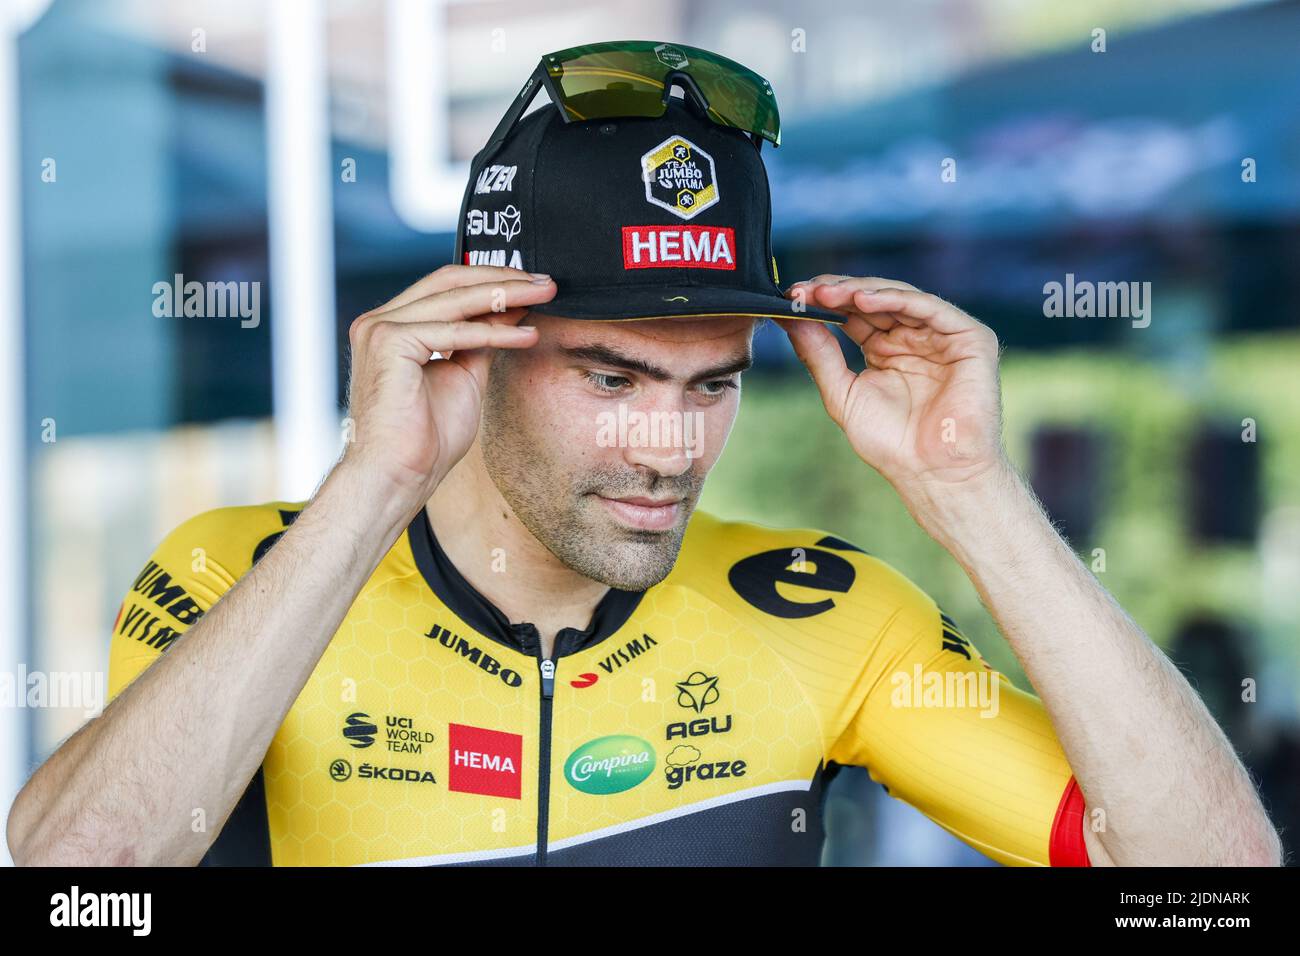 EMMEN - ciclista Tom Dumoulin dopo il suo secondo posto durante i Campionati nazionali olandesi di prova del tempo a Drenthe. ANP BAS CZERWINSKIA Foto Stock